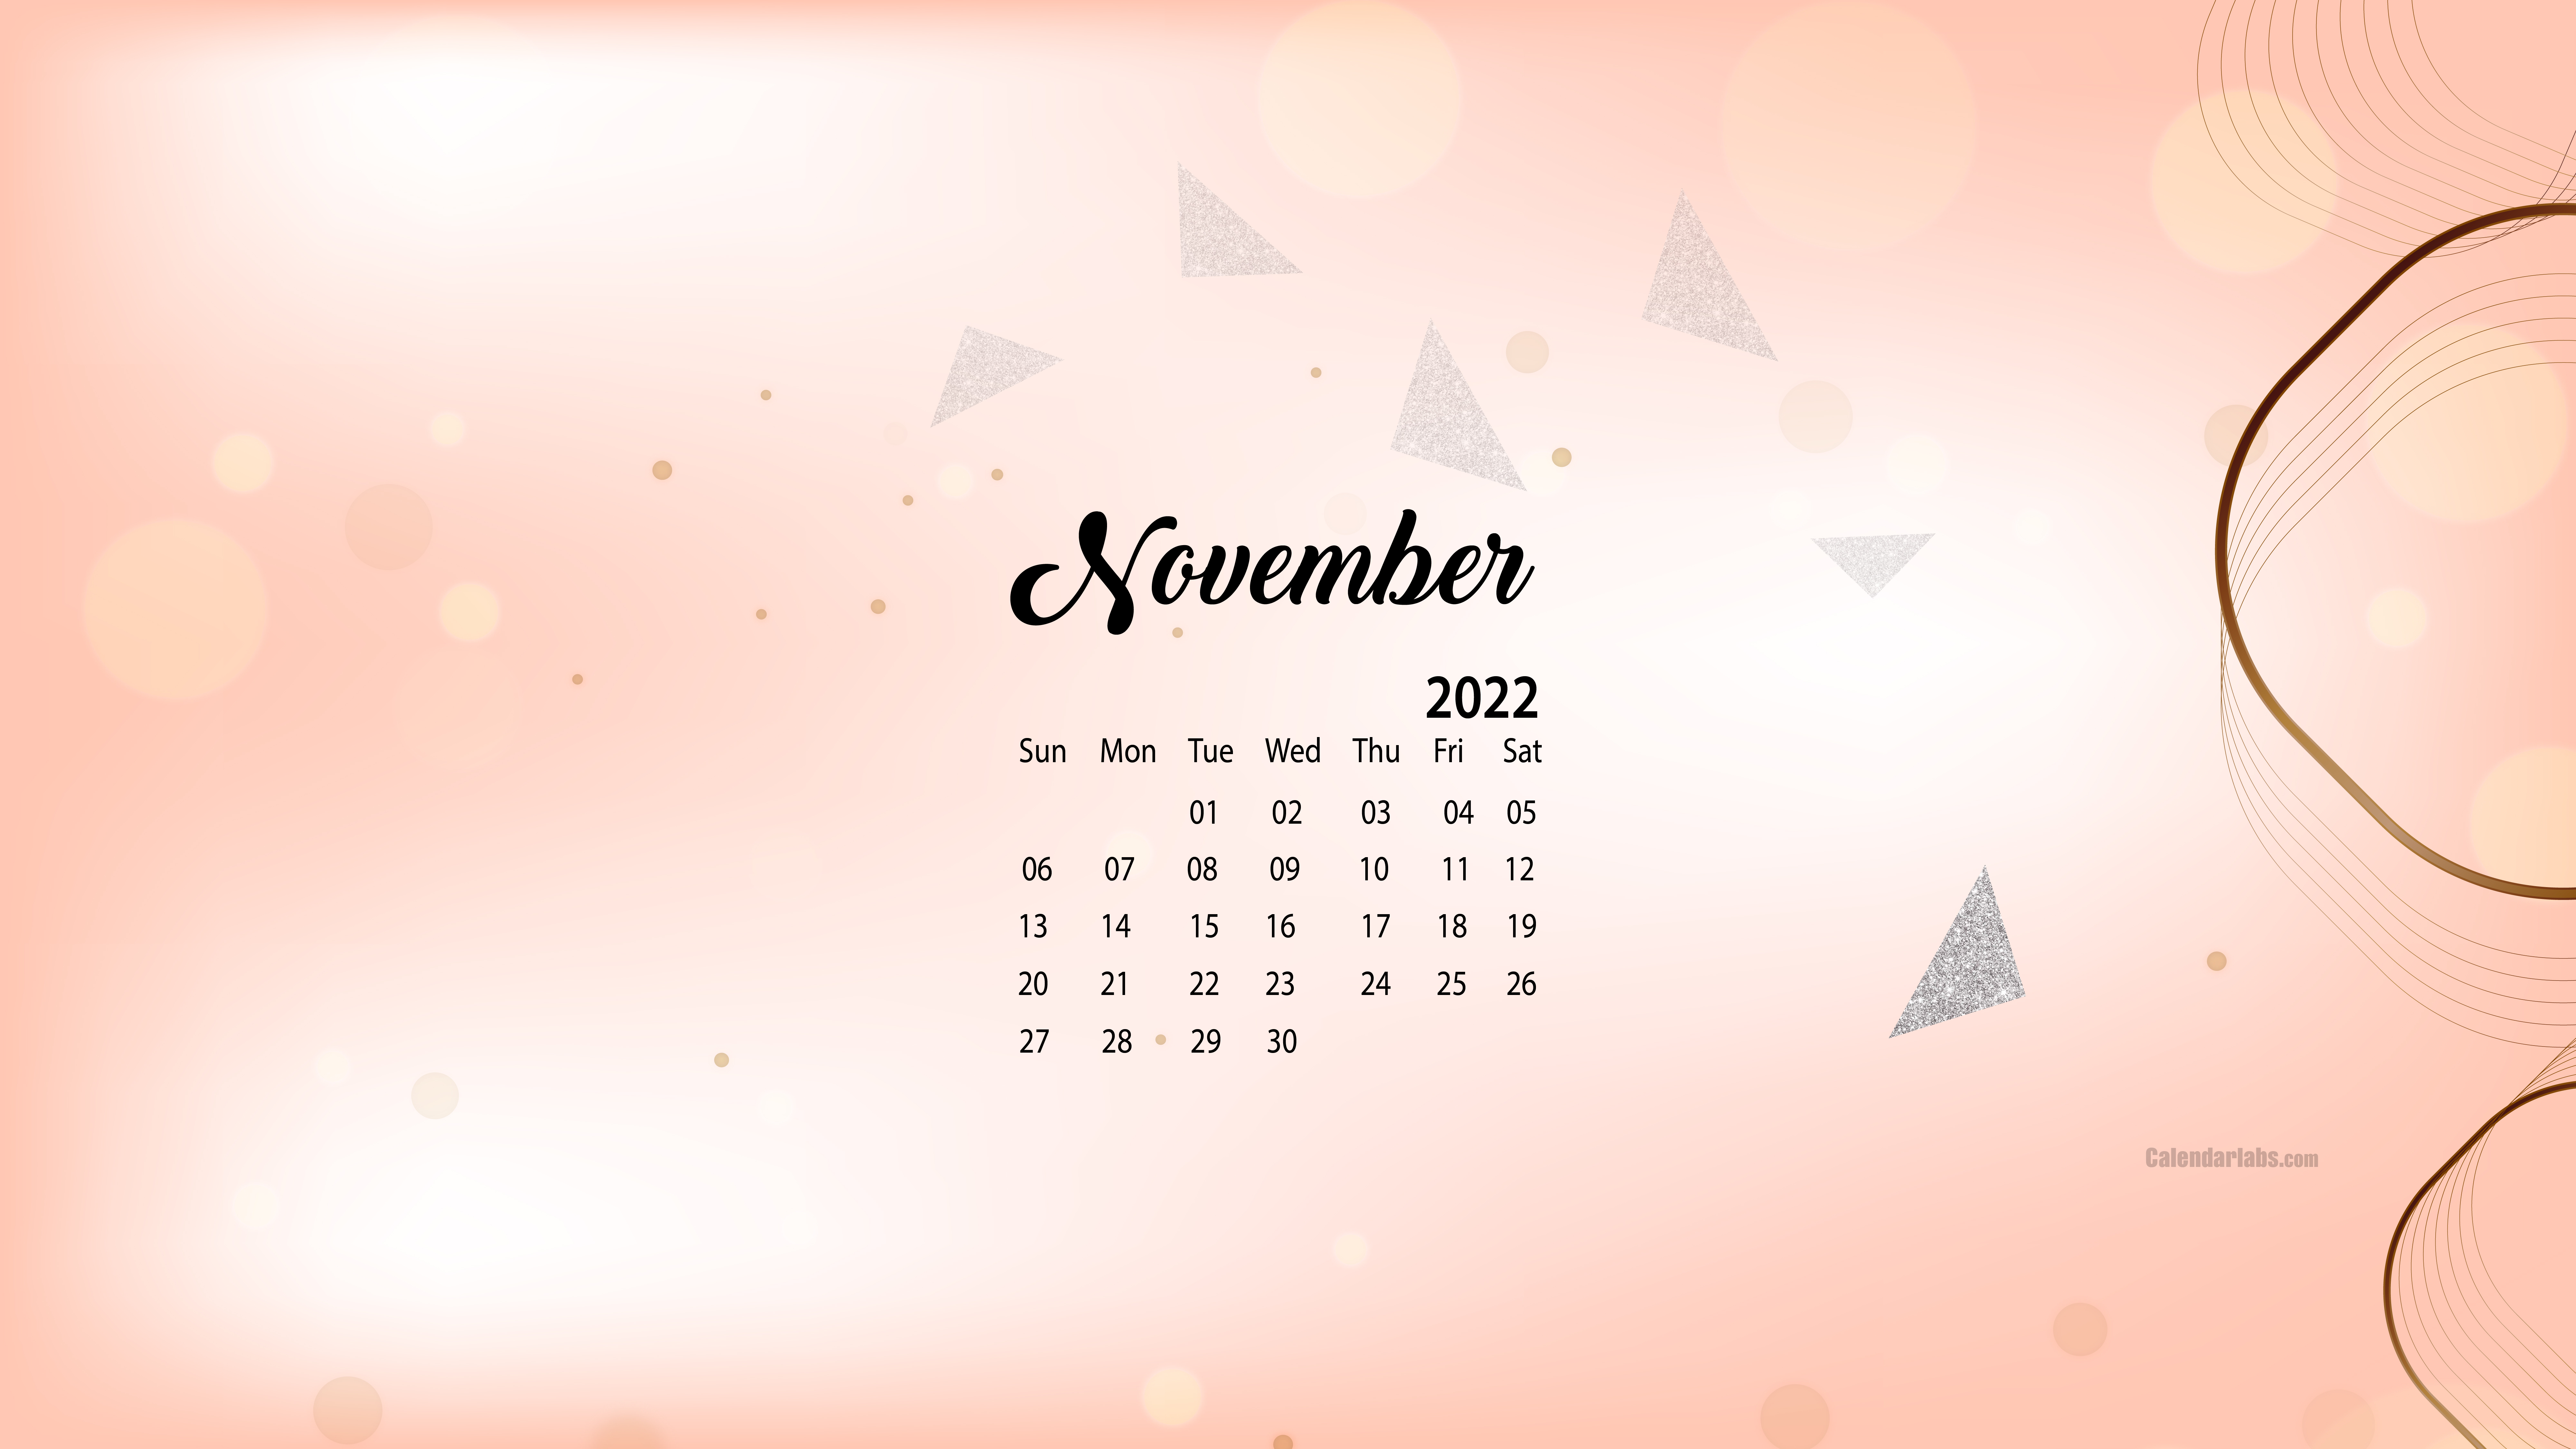 39 November 2020 Calendar Wallpapers  WallpaperSafari